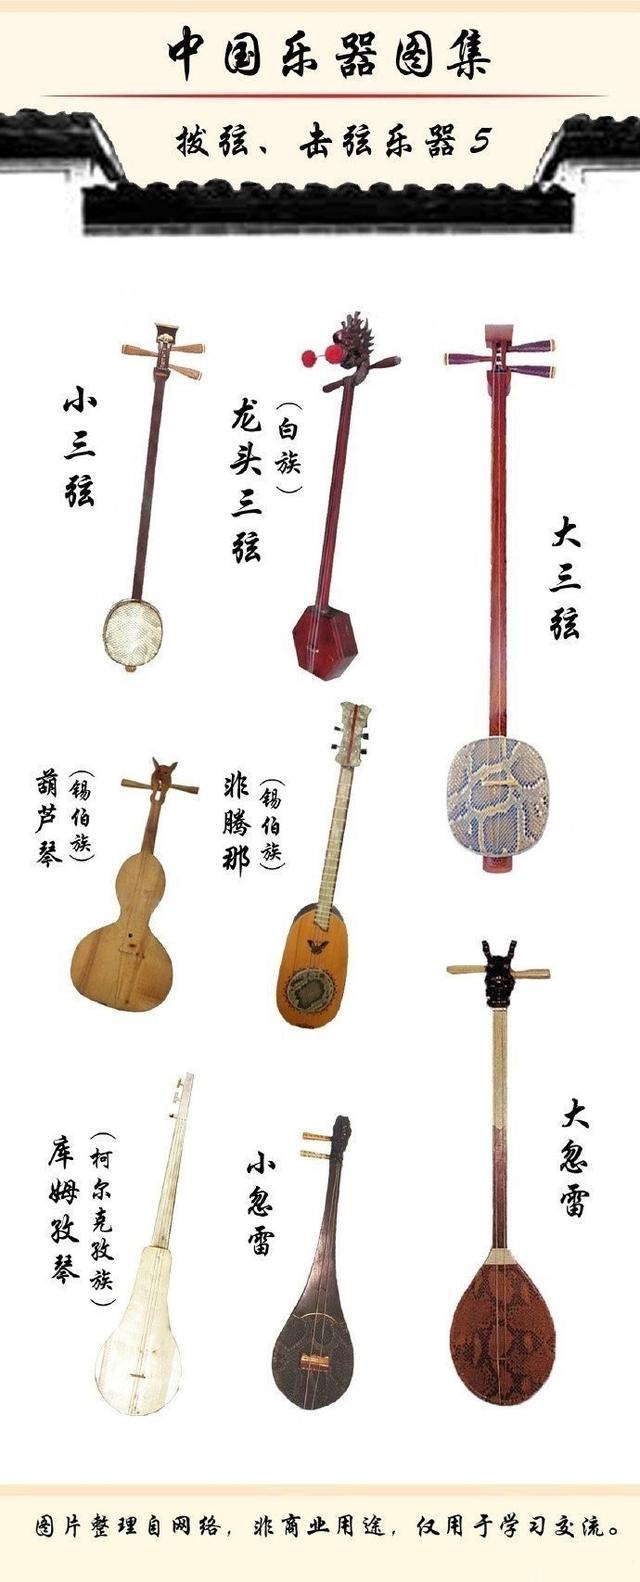 中国民族乐器,历史悠久,源远流长